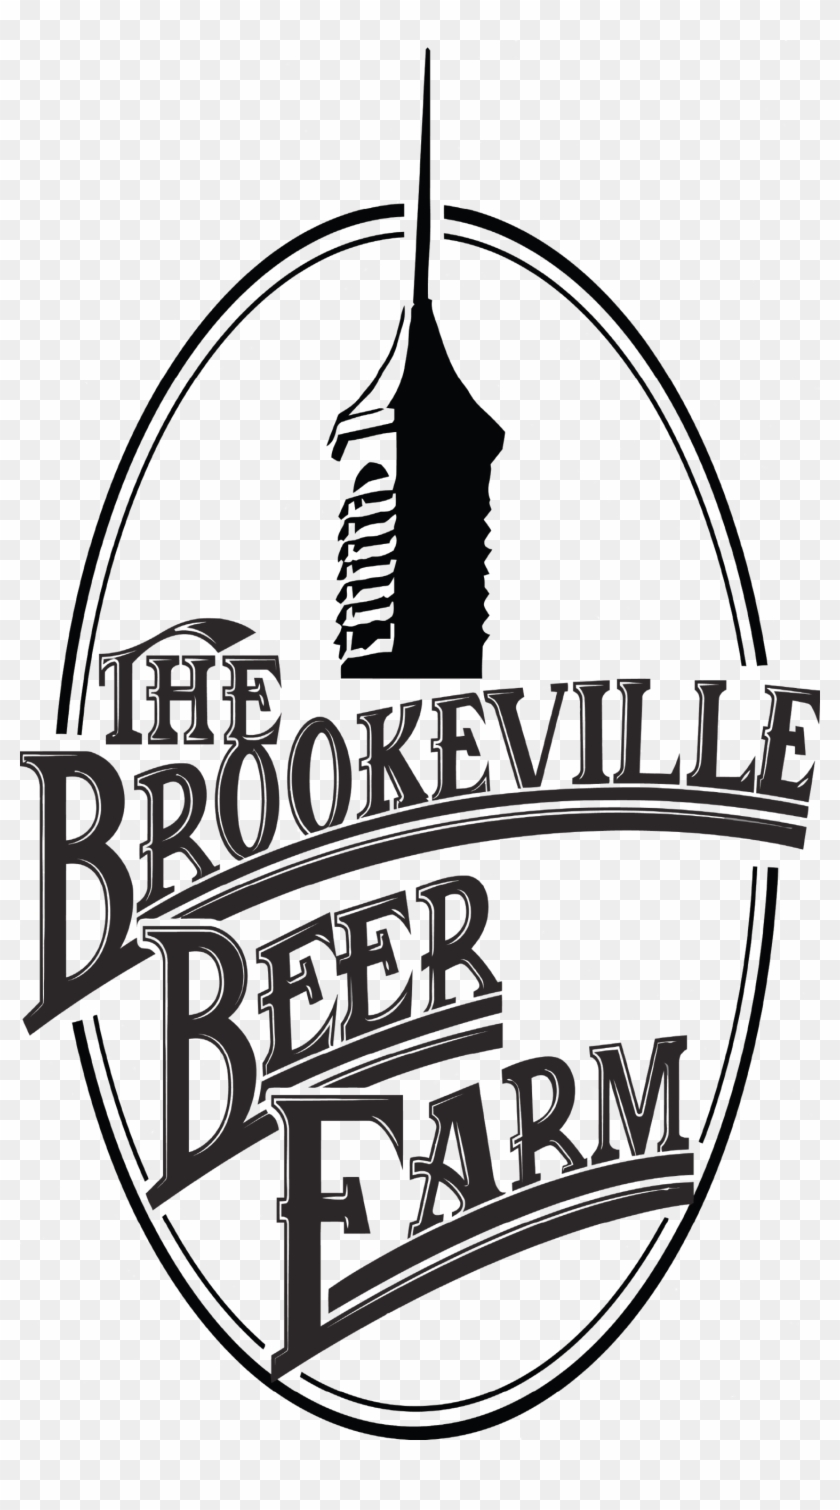 Brookeville Beer Farm - Brookeville Beer Farm Logo #1745063